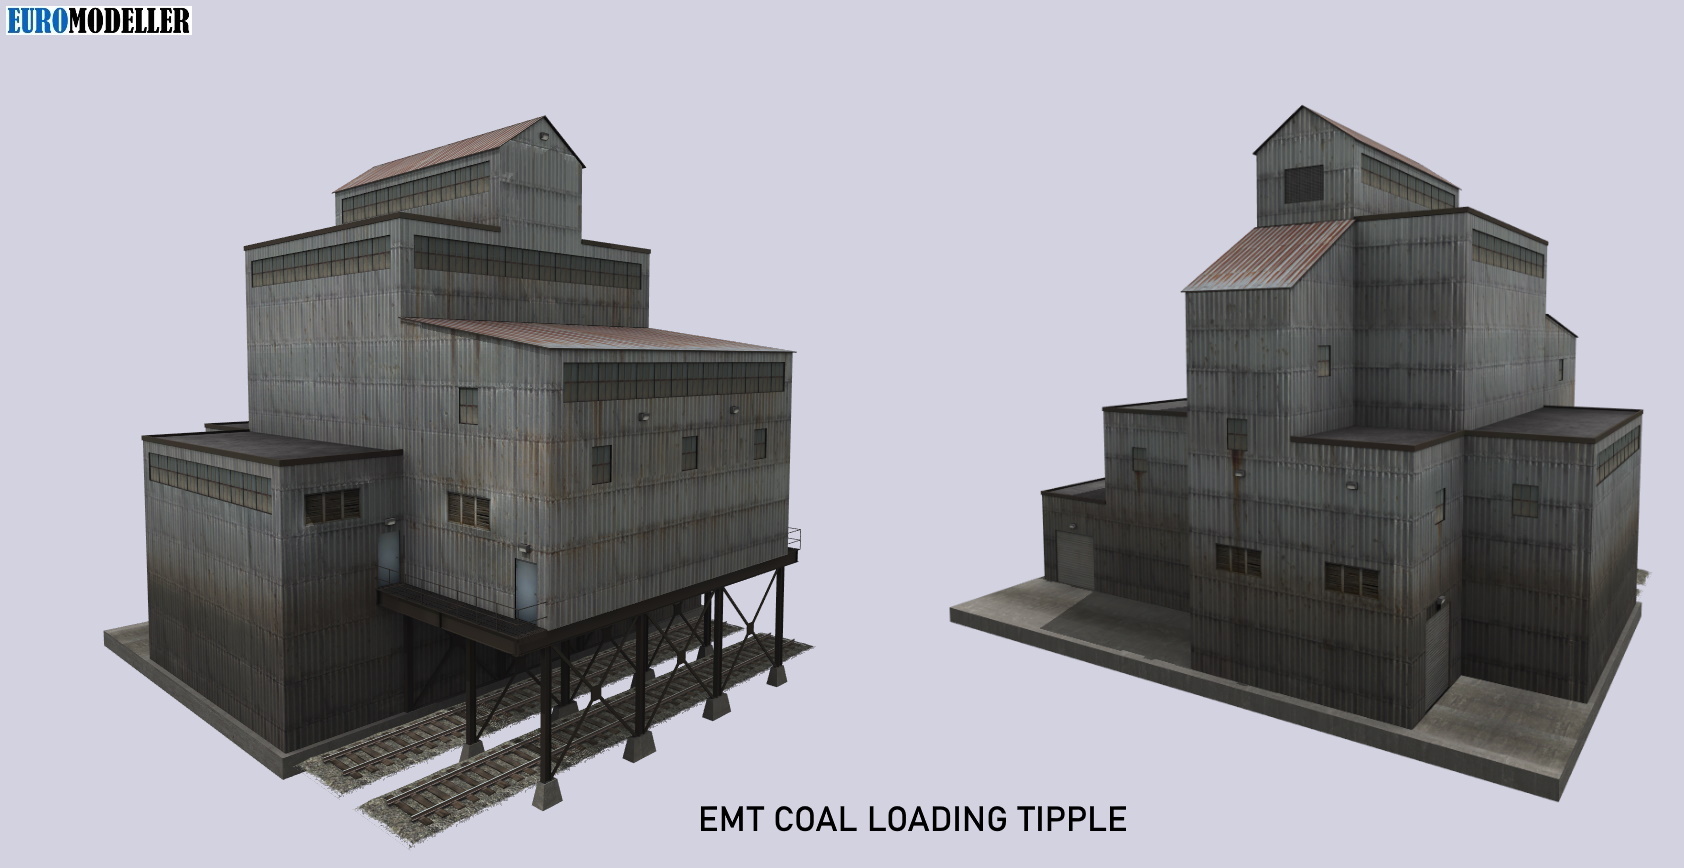 EMT Coal Loading Tipple